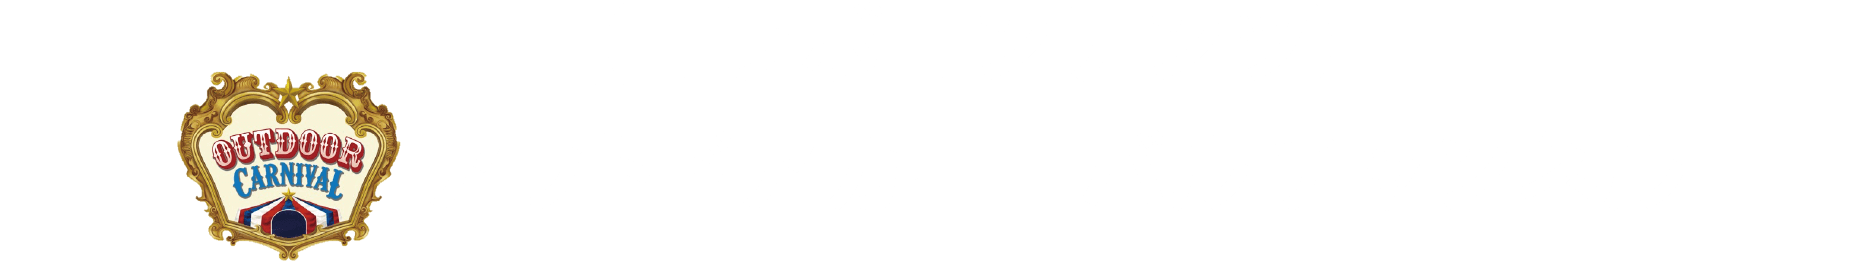 【コラボコンテンツ】アウトドアカーニバル チャンネル